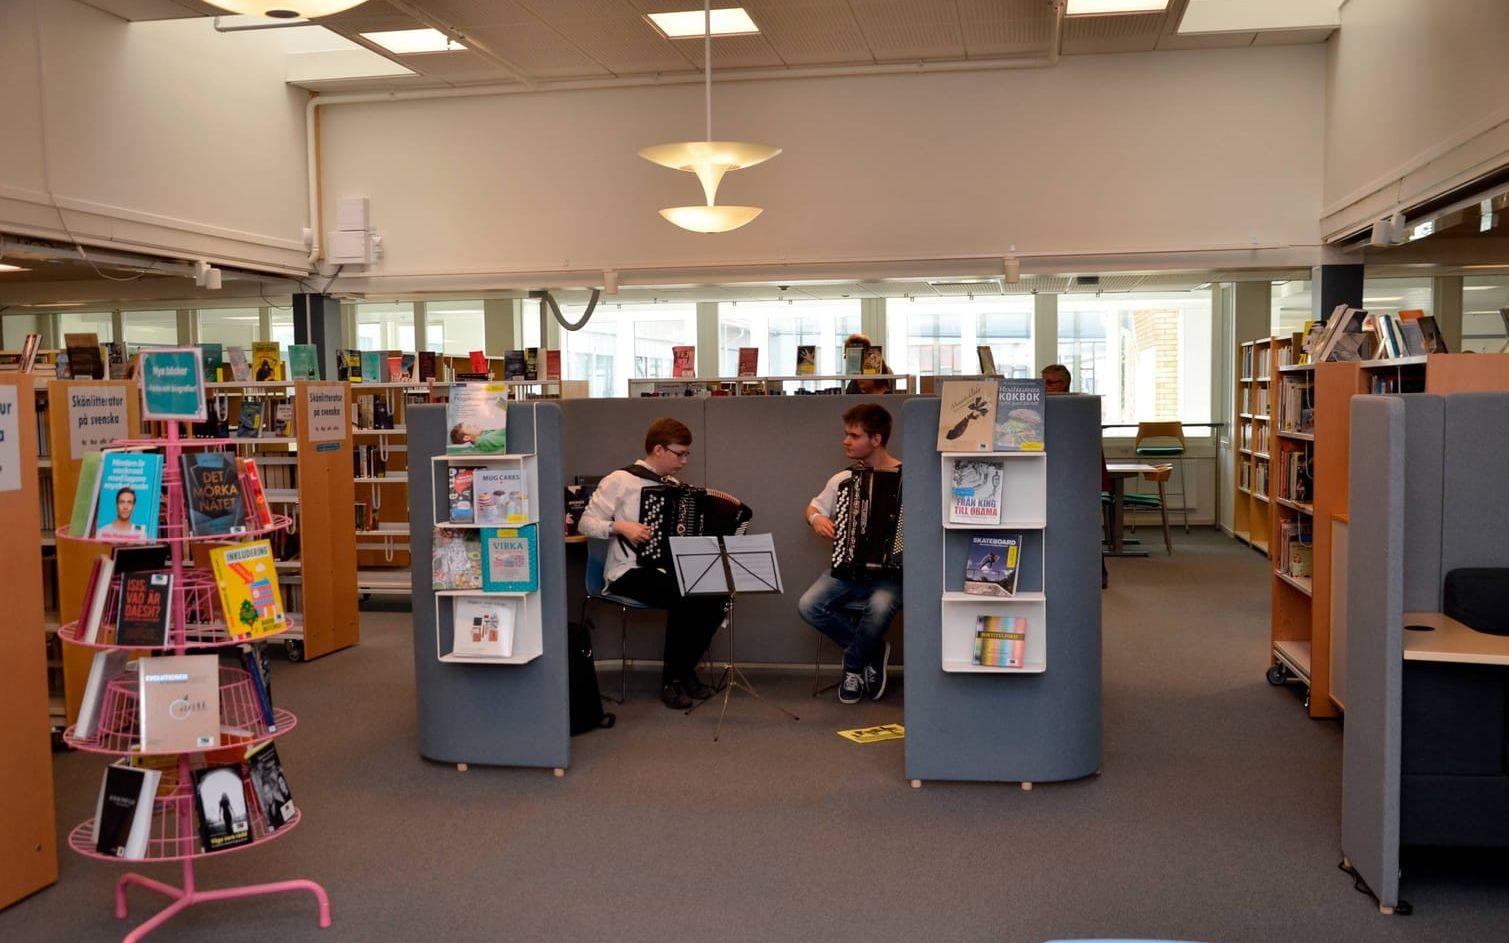 Runt skolan ljöd musik på olika platser, bland annat i nyrenoverade biblioteket.